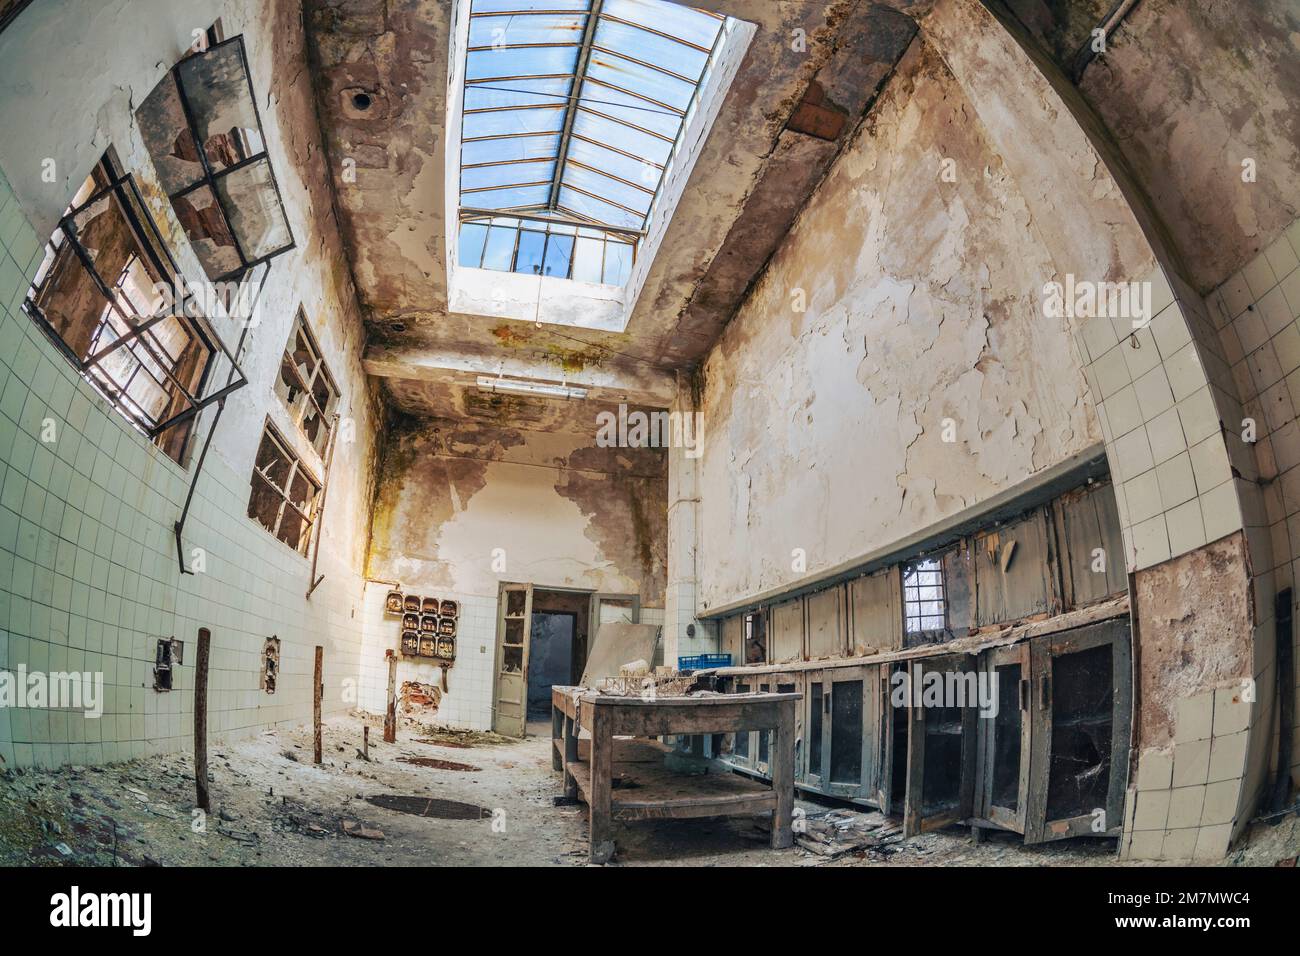 Italia, Veneto, vecchio magazzino abbandonato, decadimento dell'edilizia industriale, decadimento industriale Foto Stock